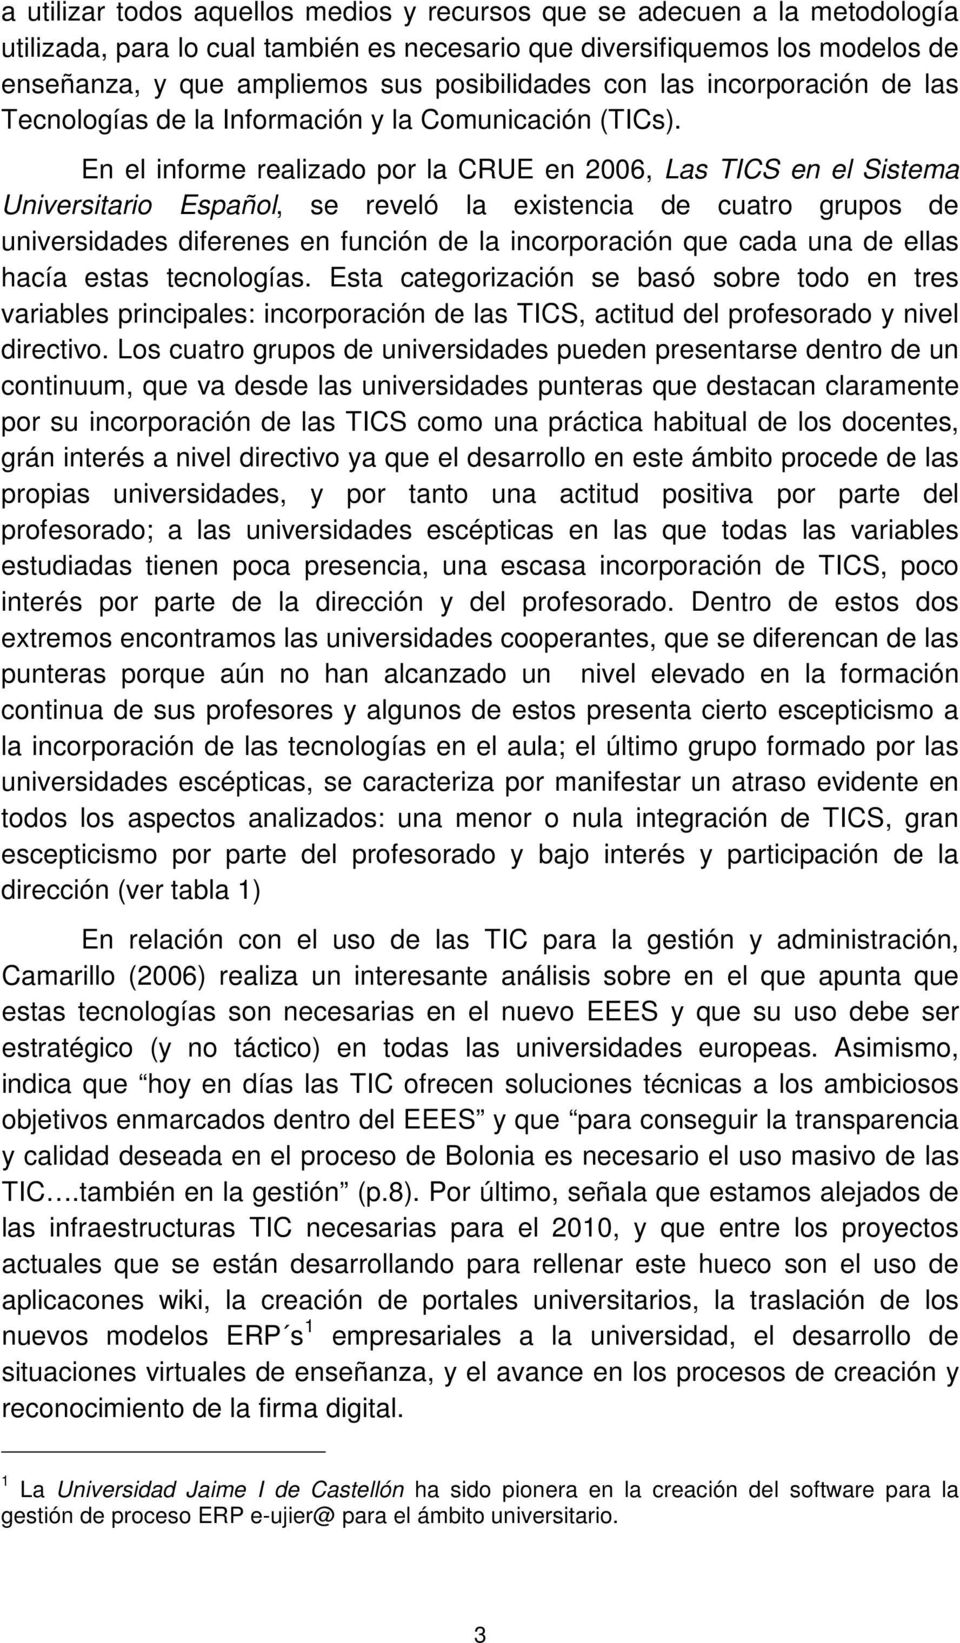 En el informe realizado por la CRUE en 2006, Las TICS en el Sistema Universitario Español, se reveló la existencia de cuatro grupos de universidades diferenes en función de la incorporación que cada